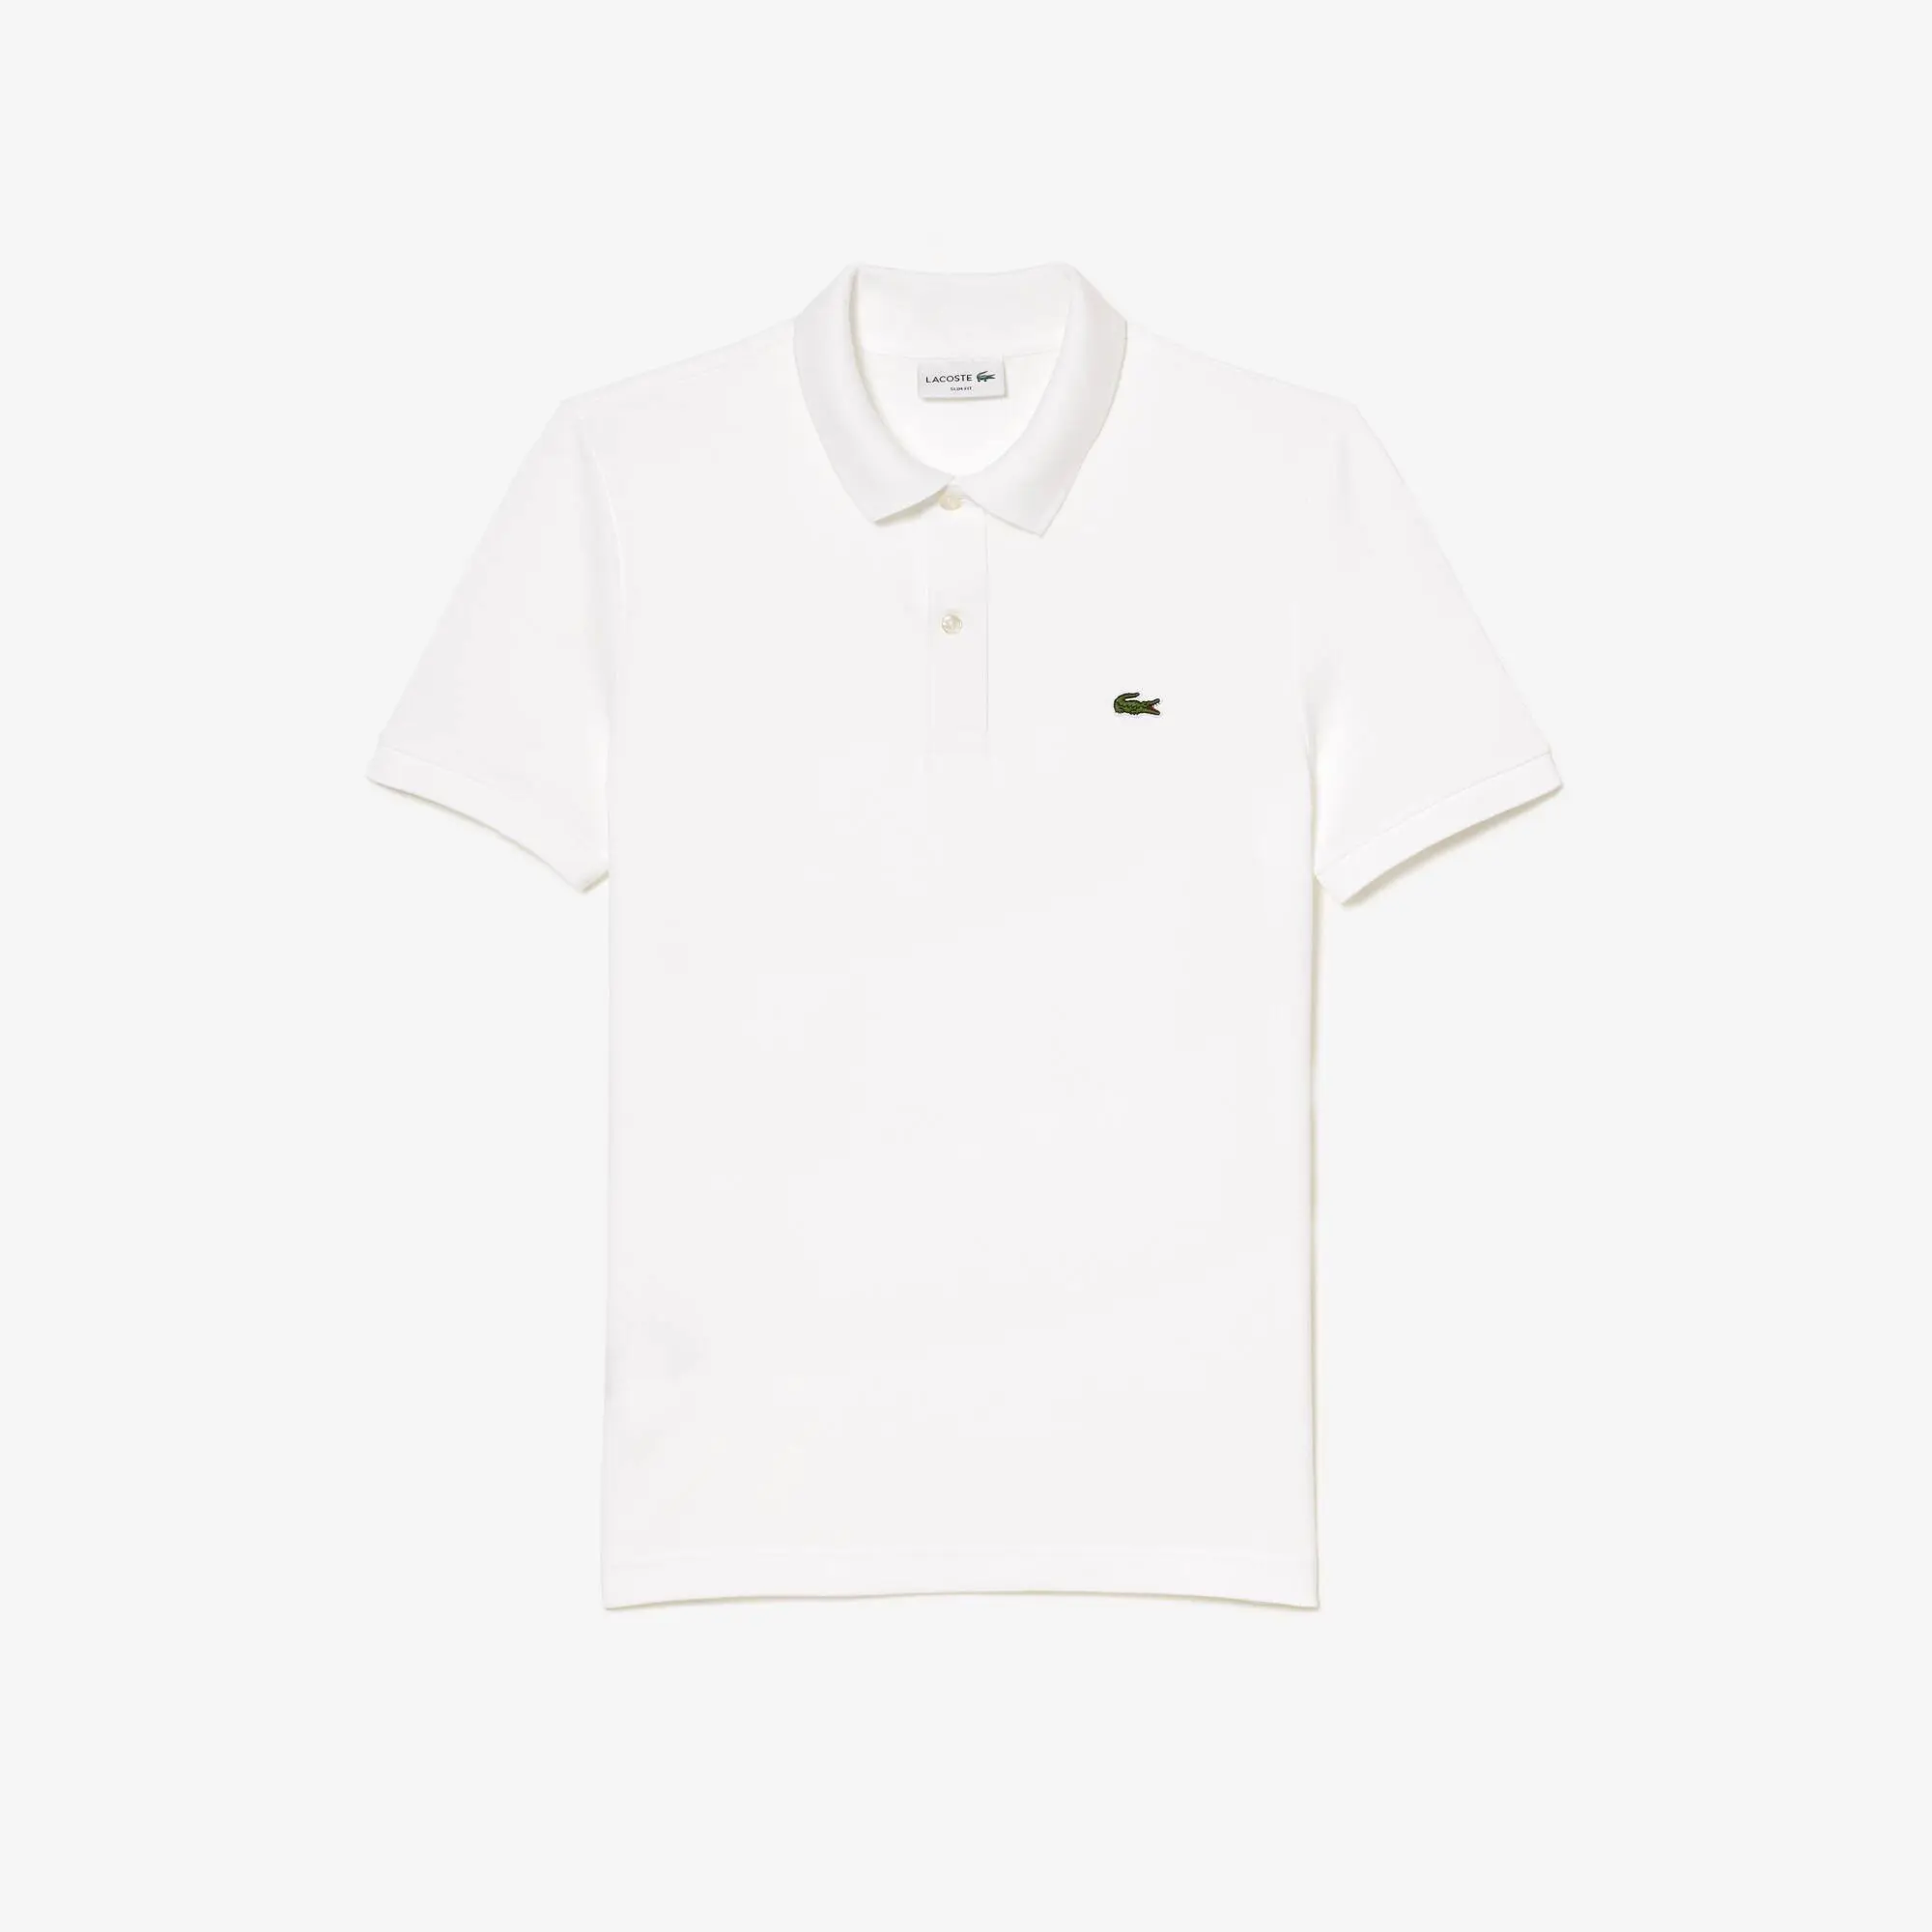 Lacoste Original L.12.12 Slim Fit Petit Piqué Cotton Polo Shirt. 2